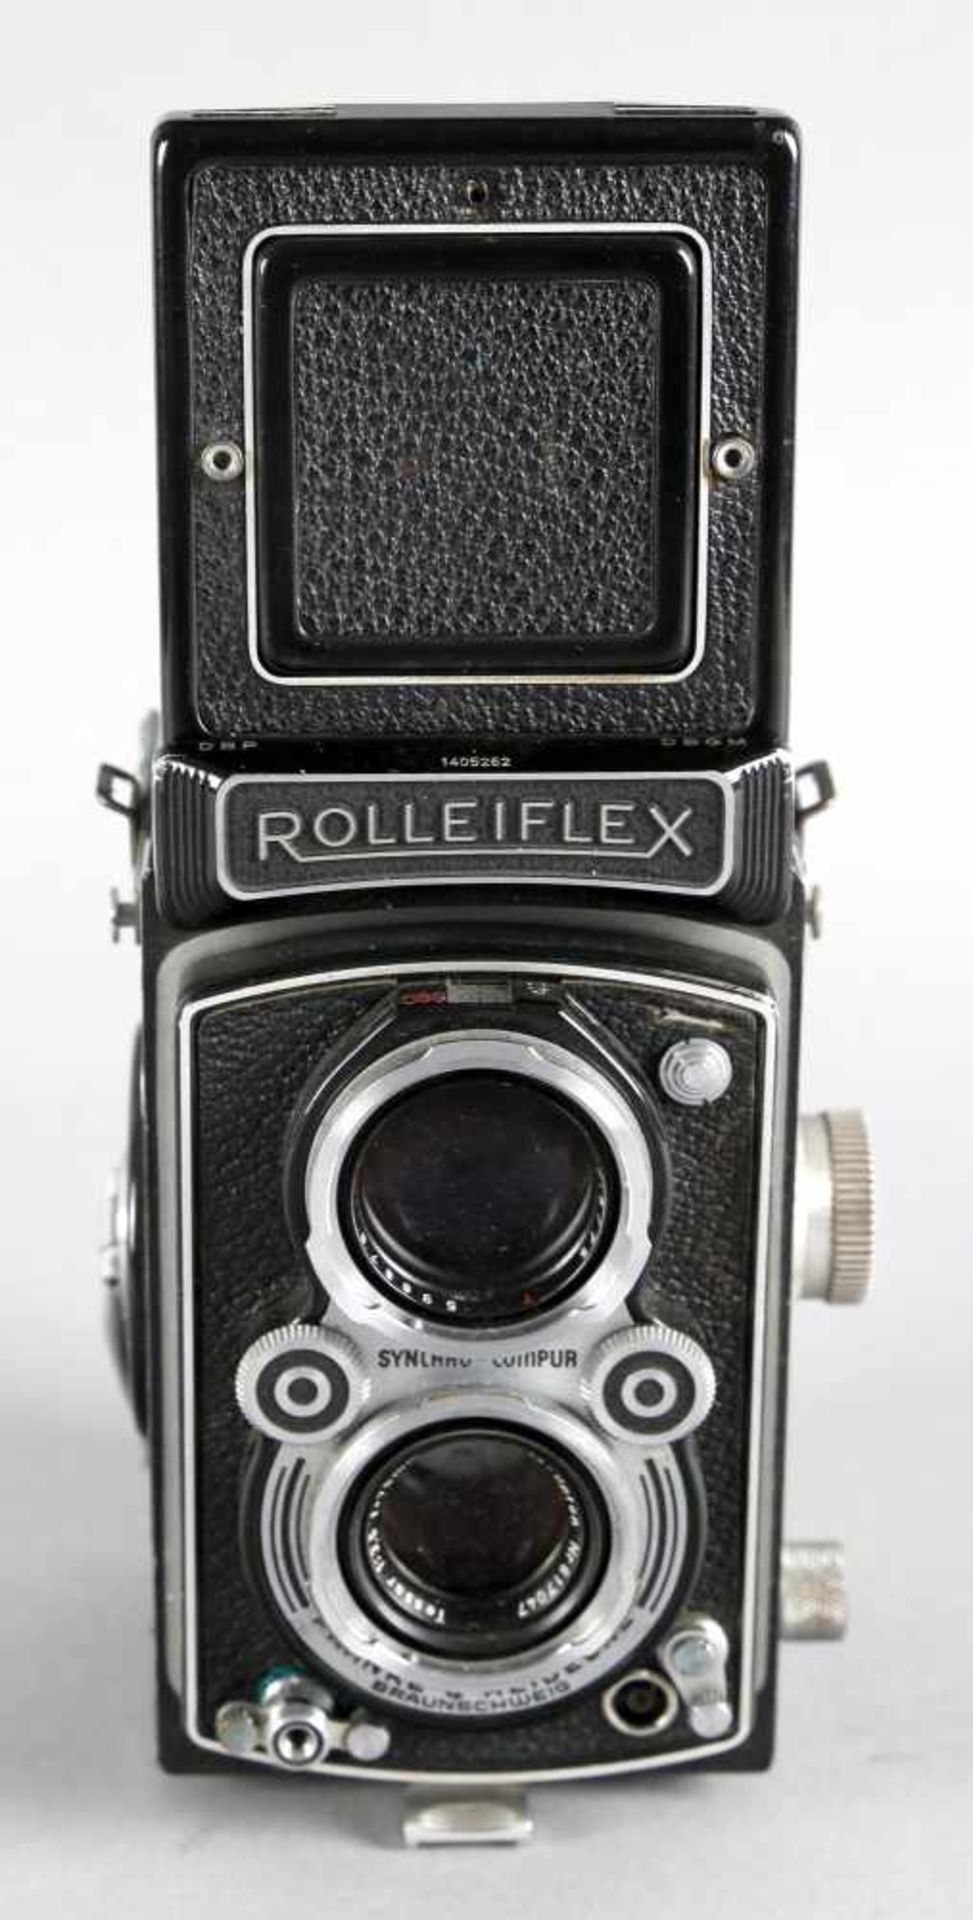 Rolleiflex Synchro-Compur, Franke und HeideckeSeriennummer 1405262, mit Objektiv: Carl Zeiss-Opton - Bild 2 aus 4